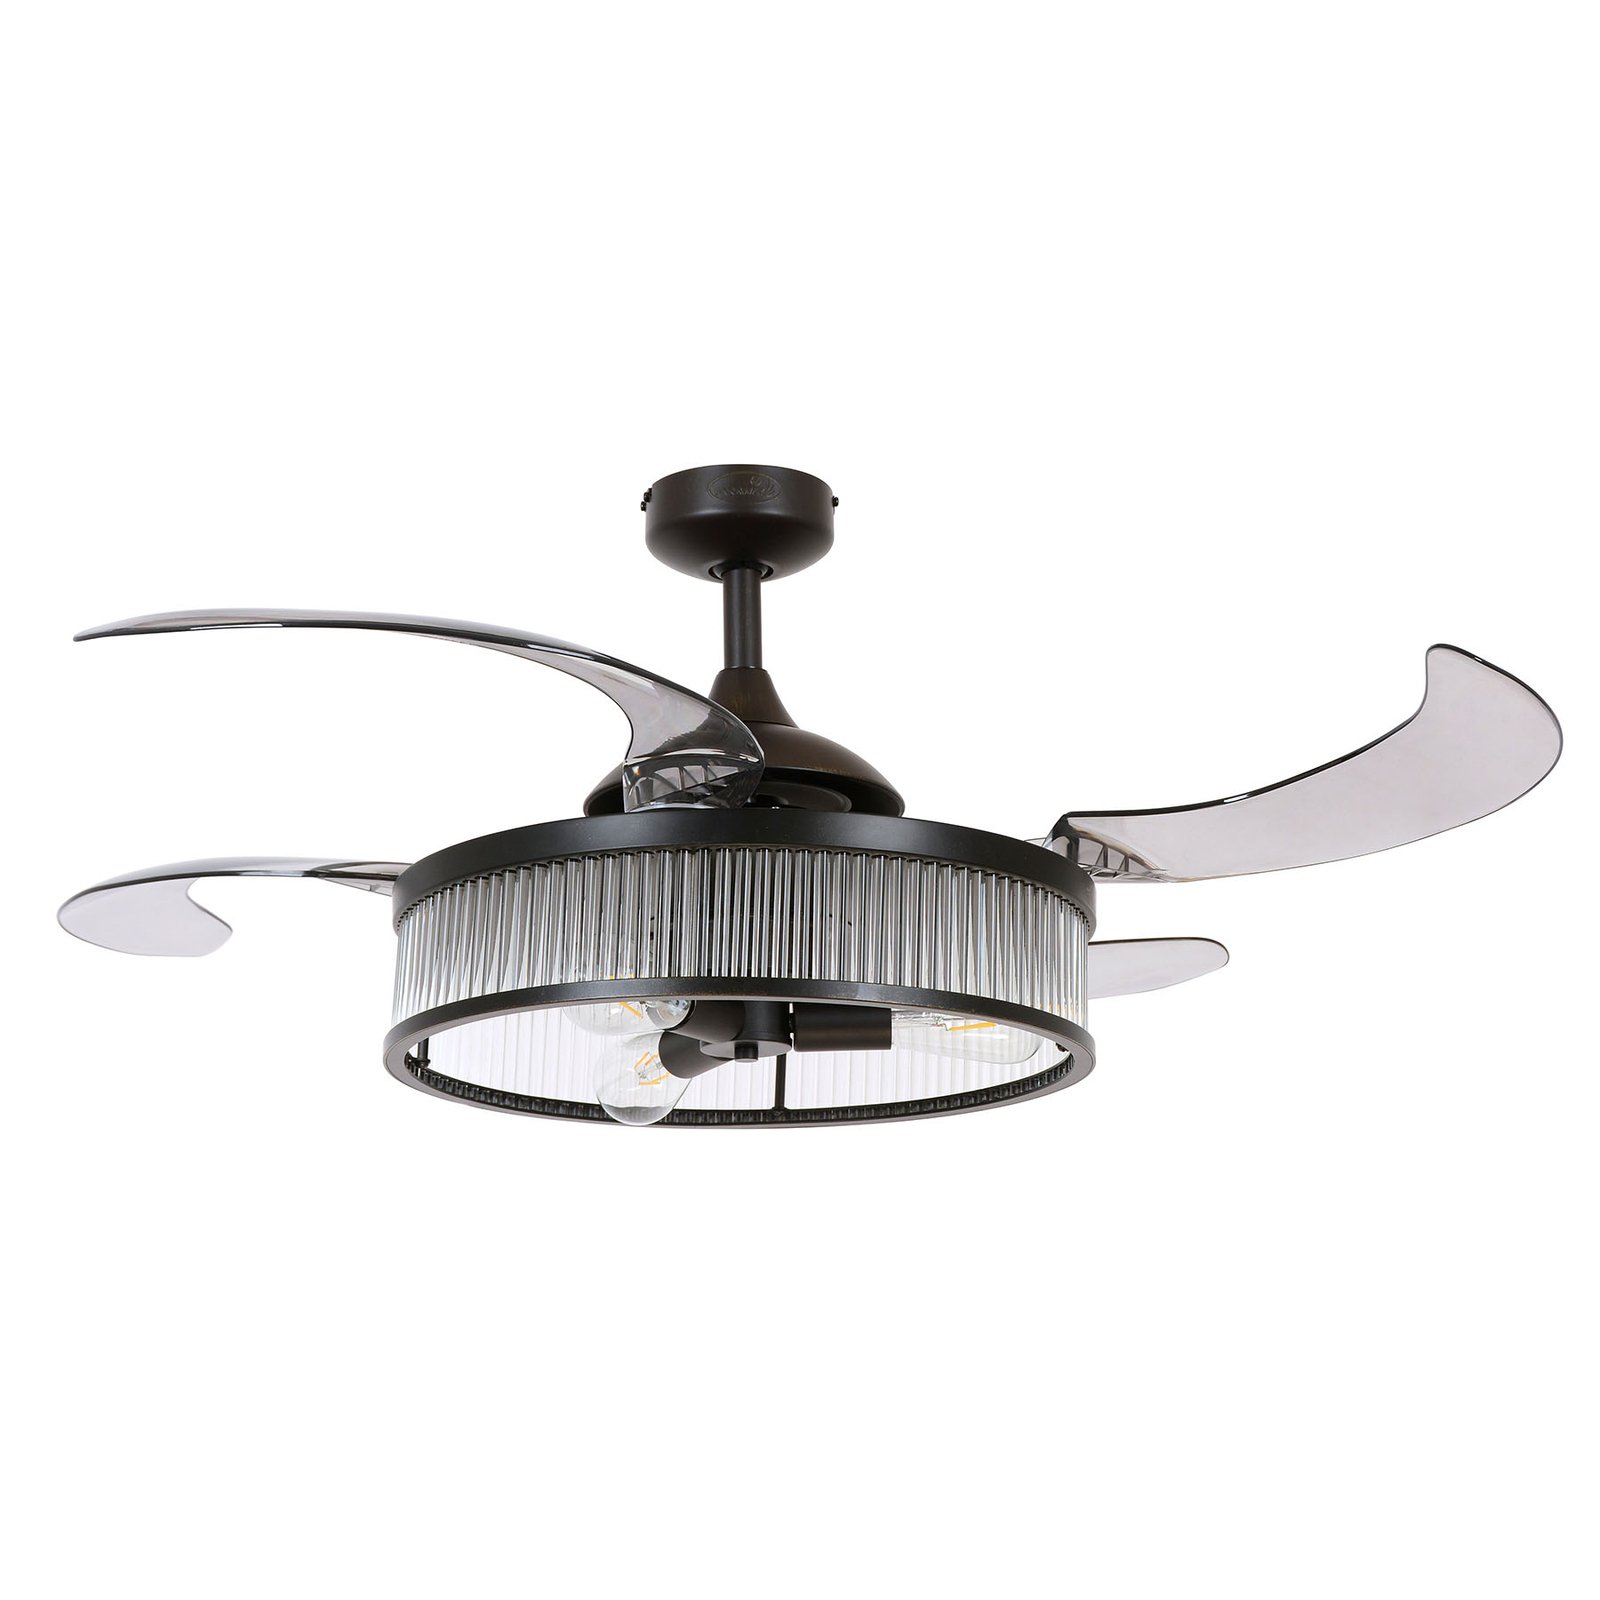 Fanaway Corbelle ceiling fan, light, black